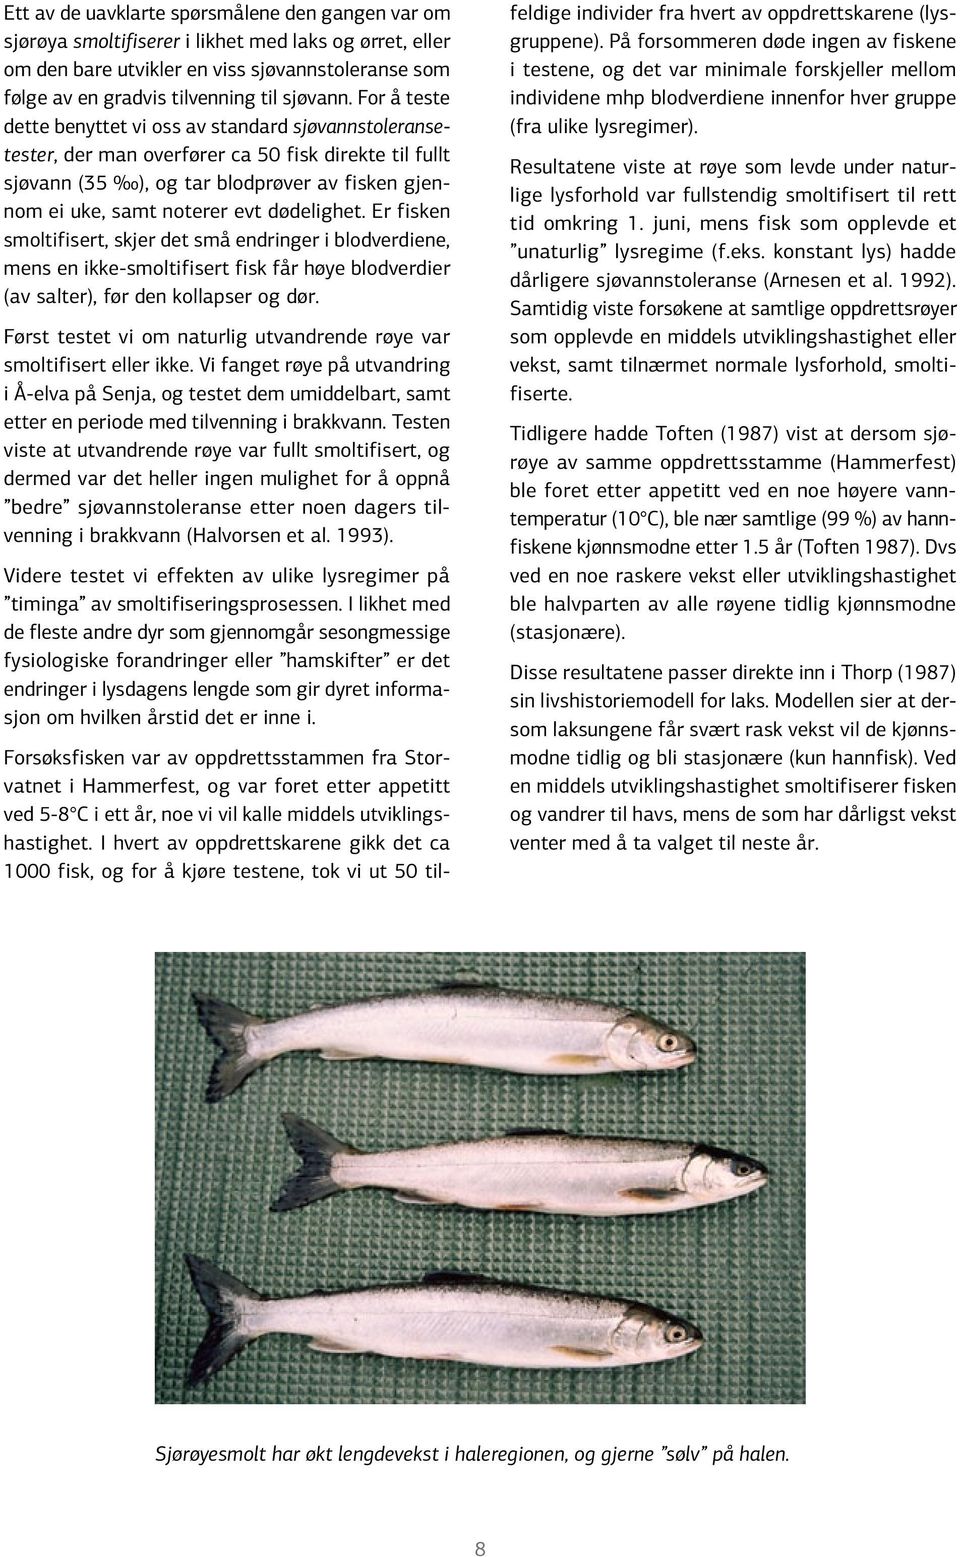 dødelighet. Er fisken smoltifisert, skjer det små endringer i blodverdiene, mens en ikke-smoltifisert fisk får høye blodverdier (av salter), før den kollapser og dør.